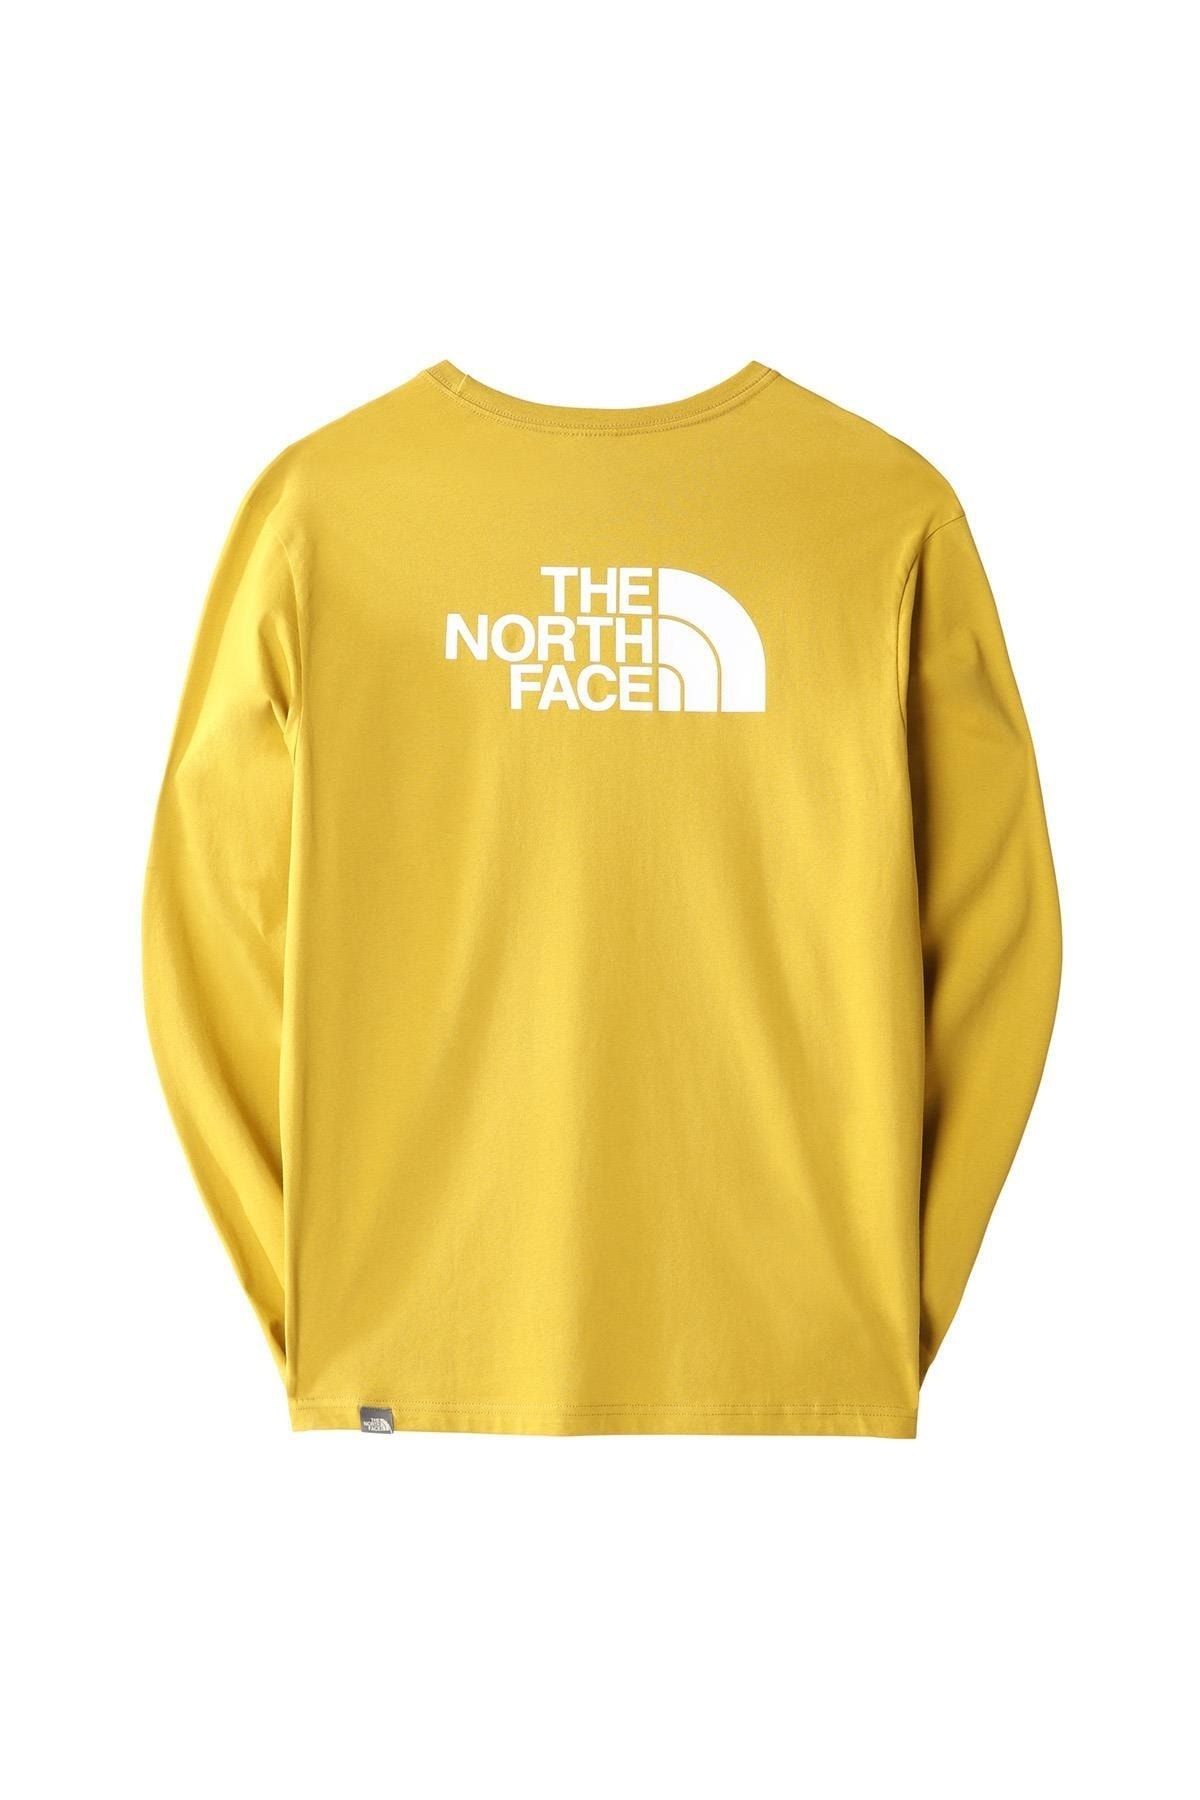 The North Face The Northface Erkek L/s Easy Tee - Eu Tişört